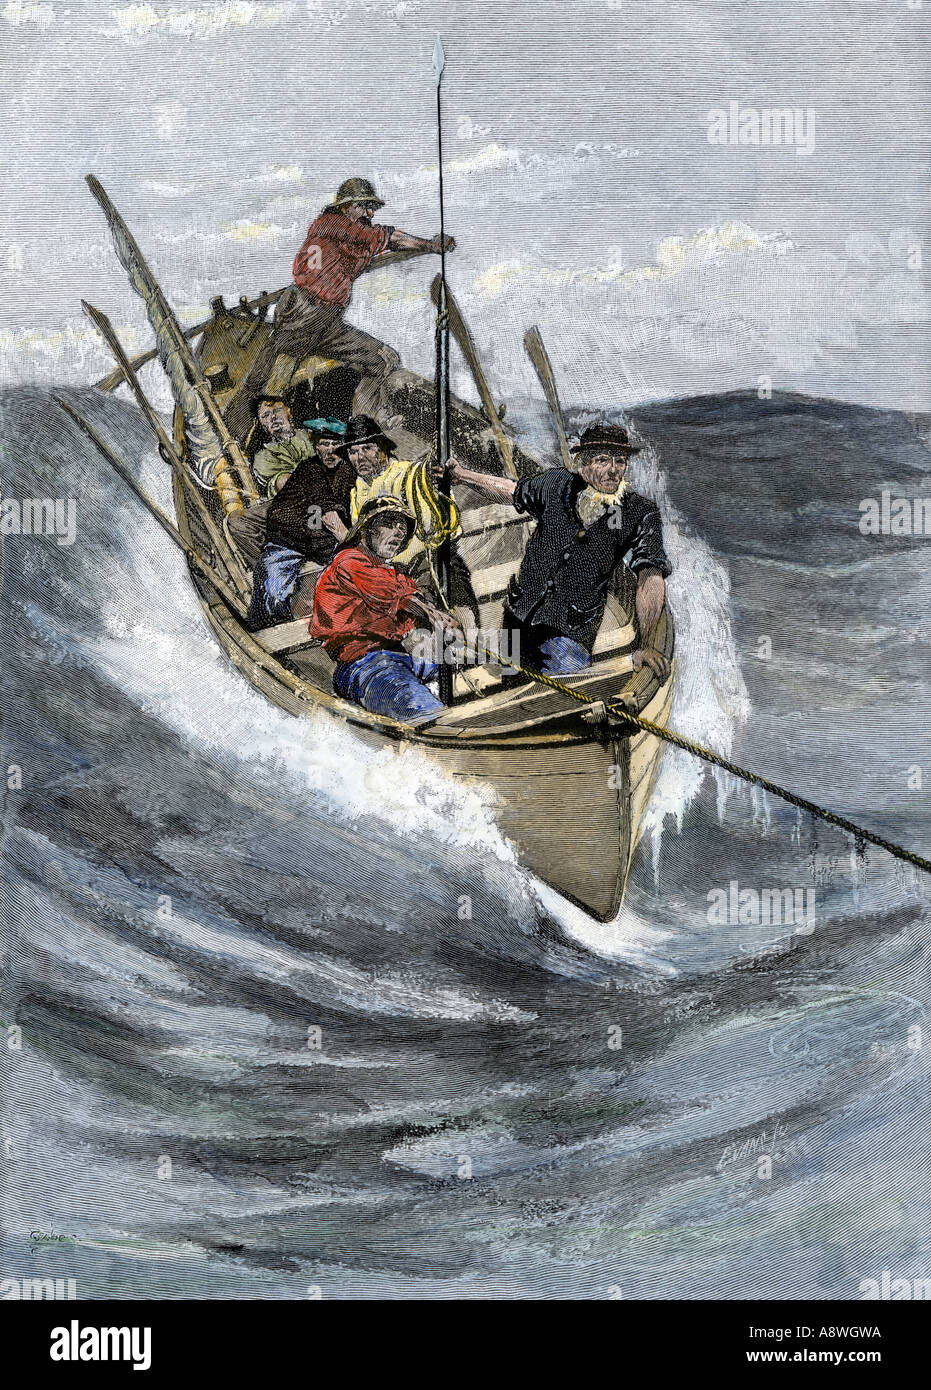 Nantucket Sleigh Ride in cui un longboat viene tirato attraverso il mare da un arpione la linea presentata in una balena 1800s. Colorate a mano la xilografia Foto Stock